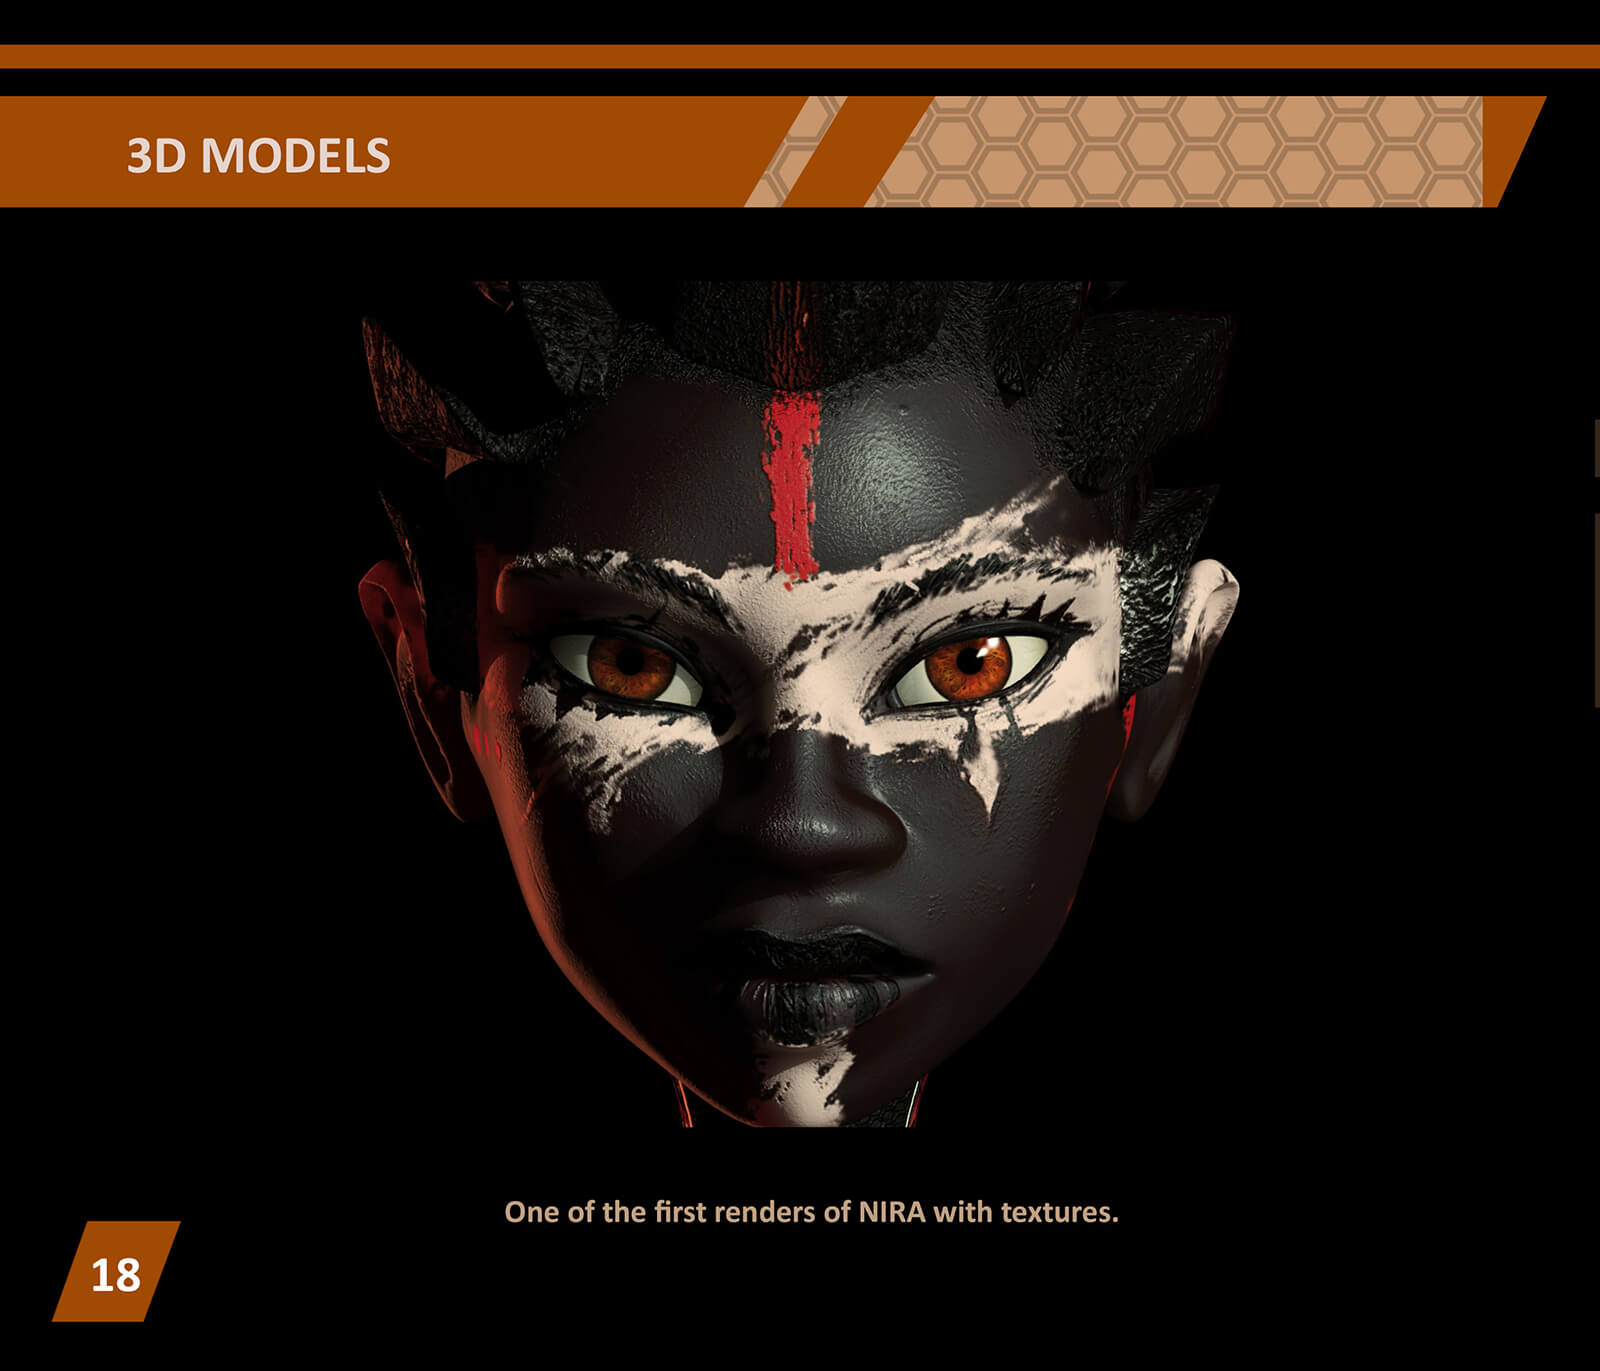 Modelo 3D de un primer plano de una mujer con pintura facial negra, blanca y roja mirando hacia adelante con ojos rojos.